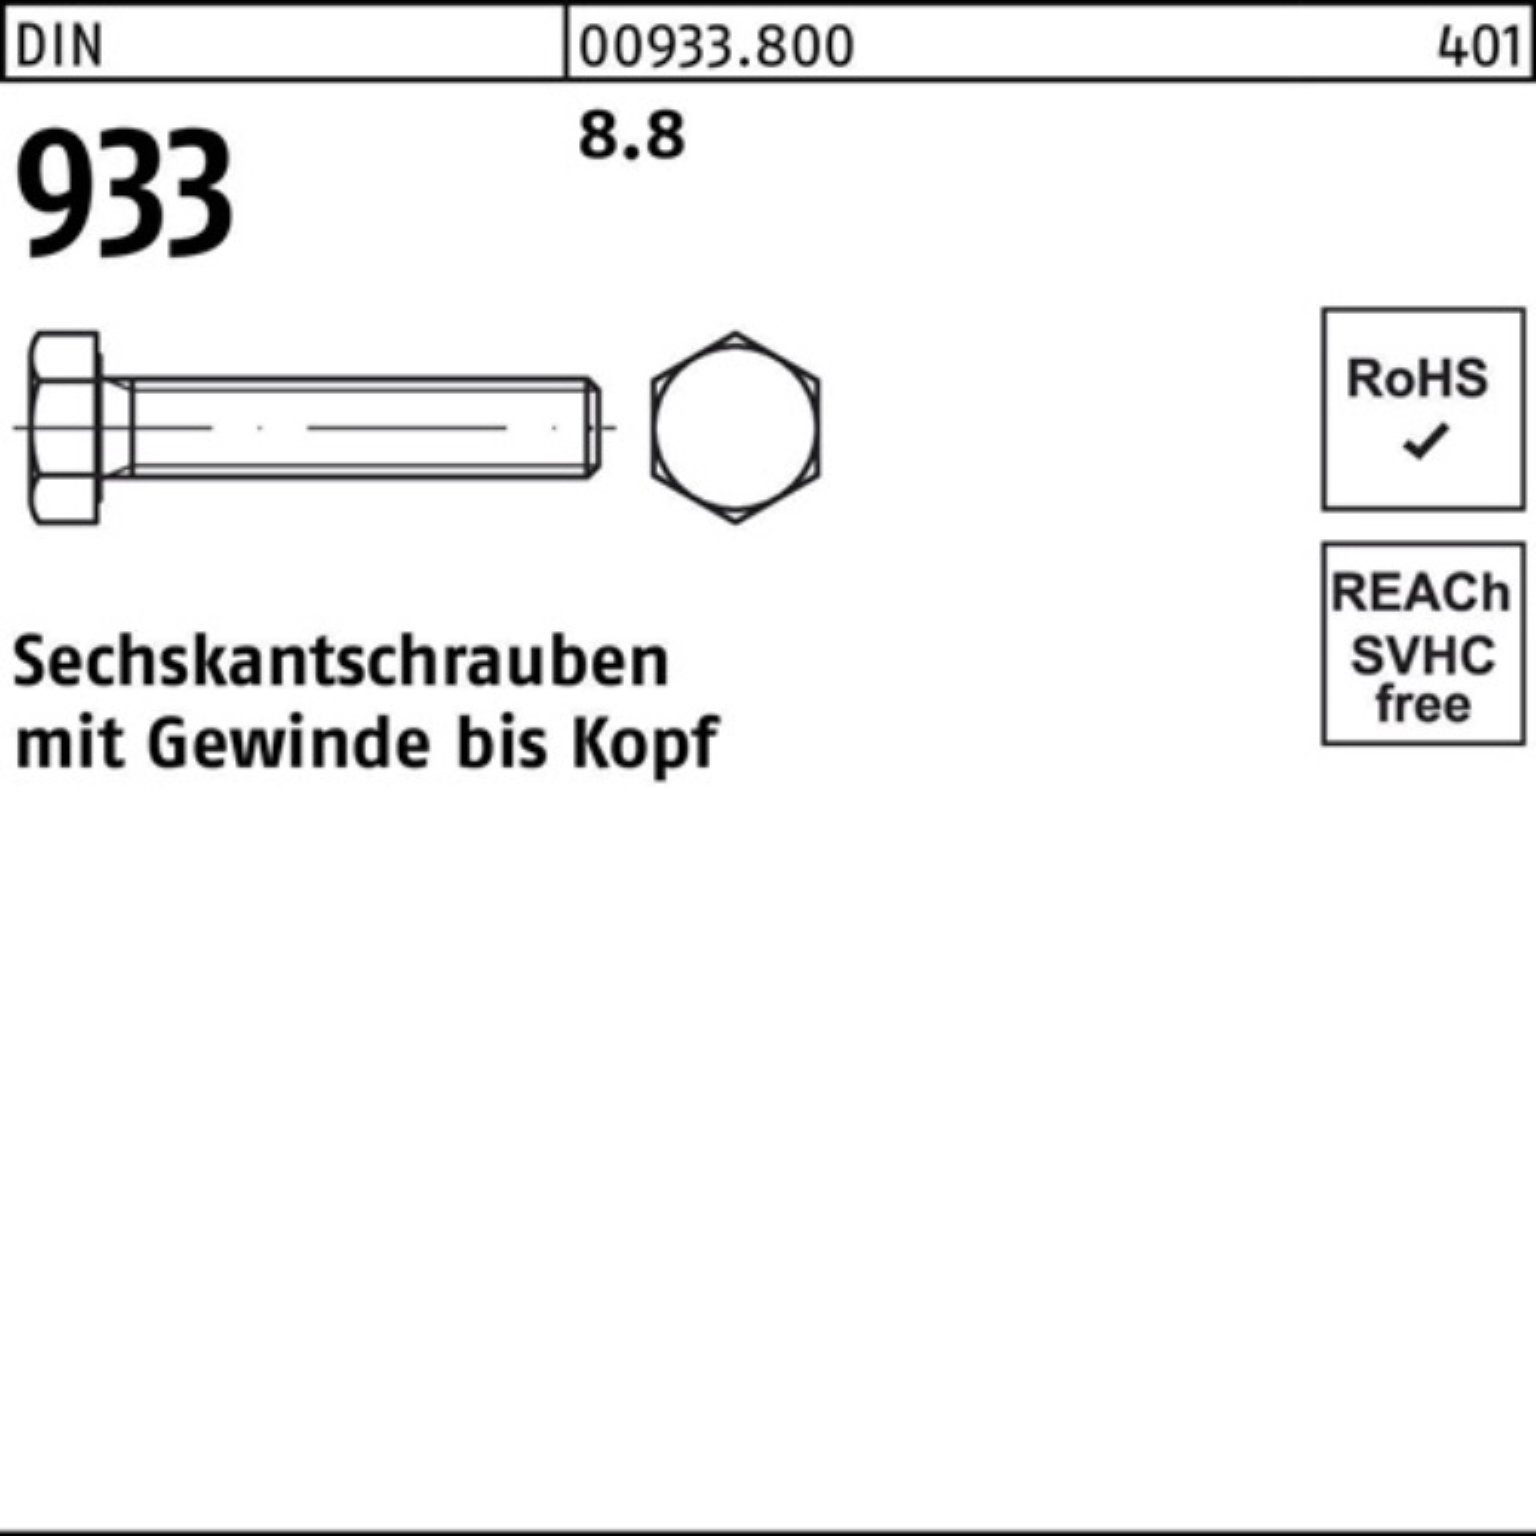 Reyher Sechskantschraube 100er Pack Sechskantschraube DIN 933 8.8 DIN 55 VG 8 933 Stück 1 M30x